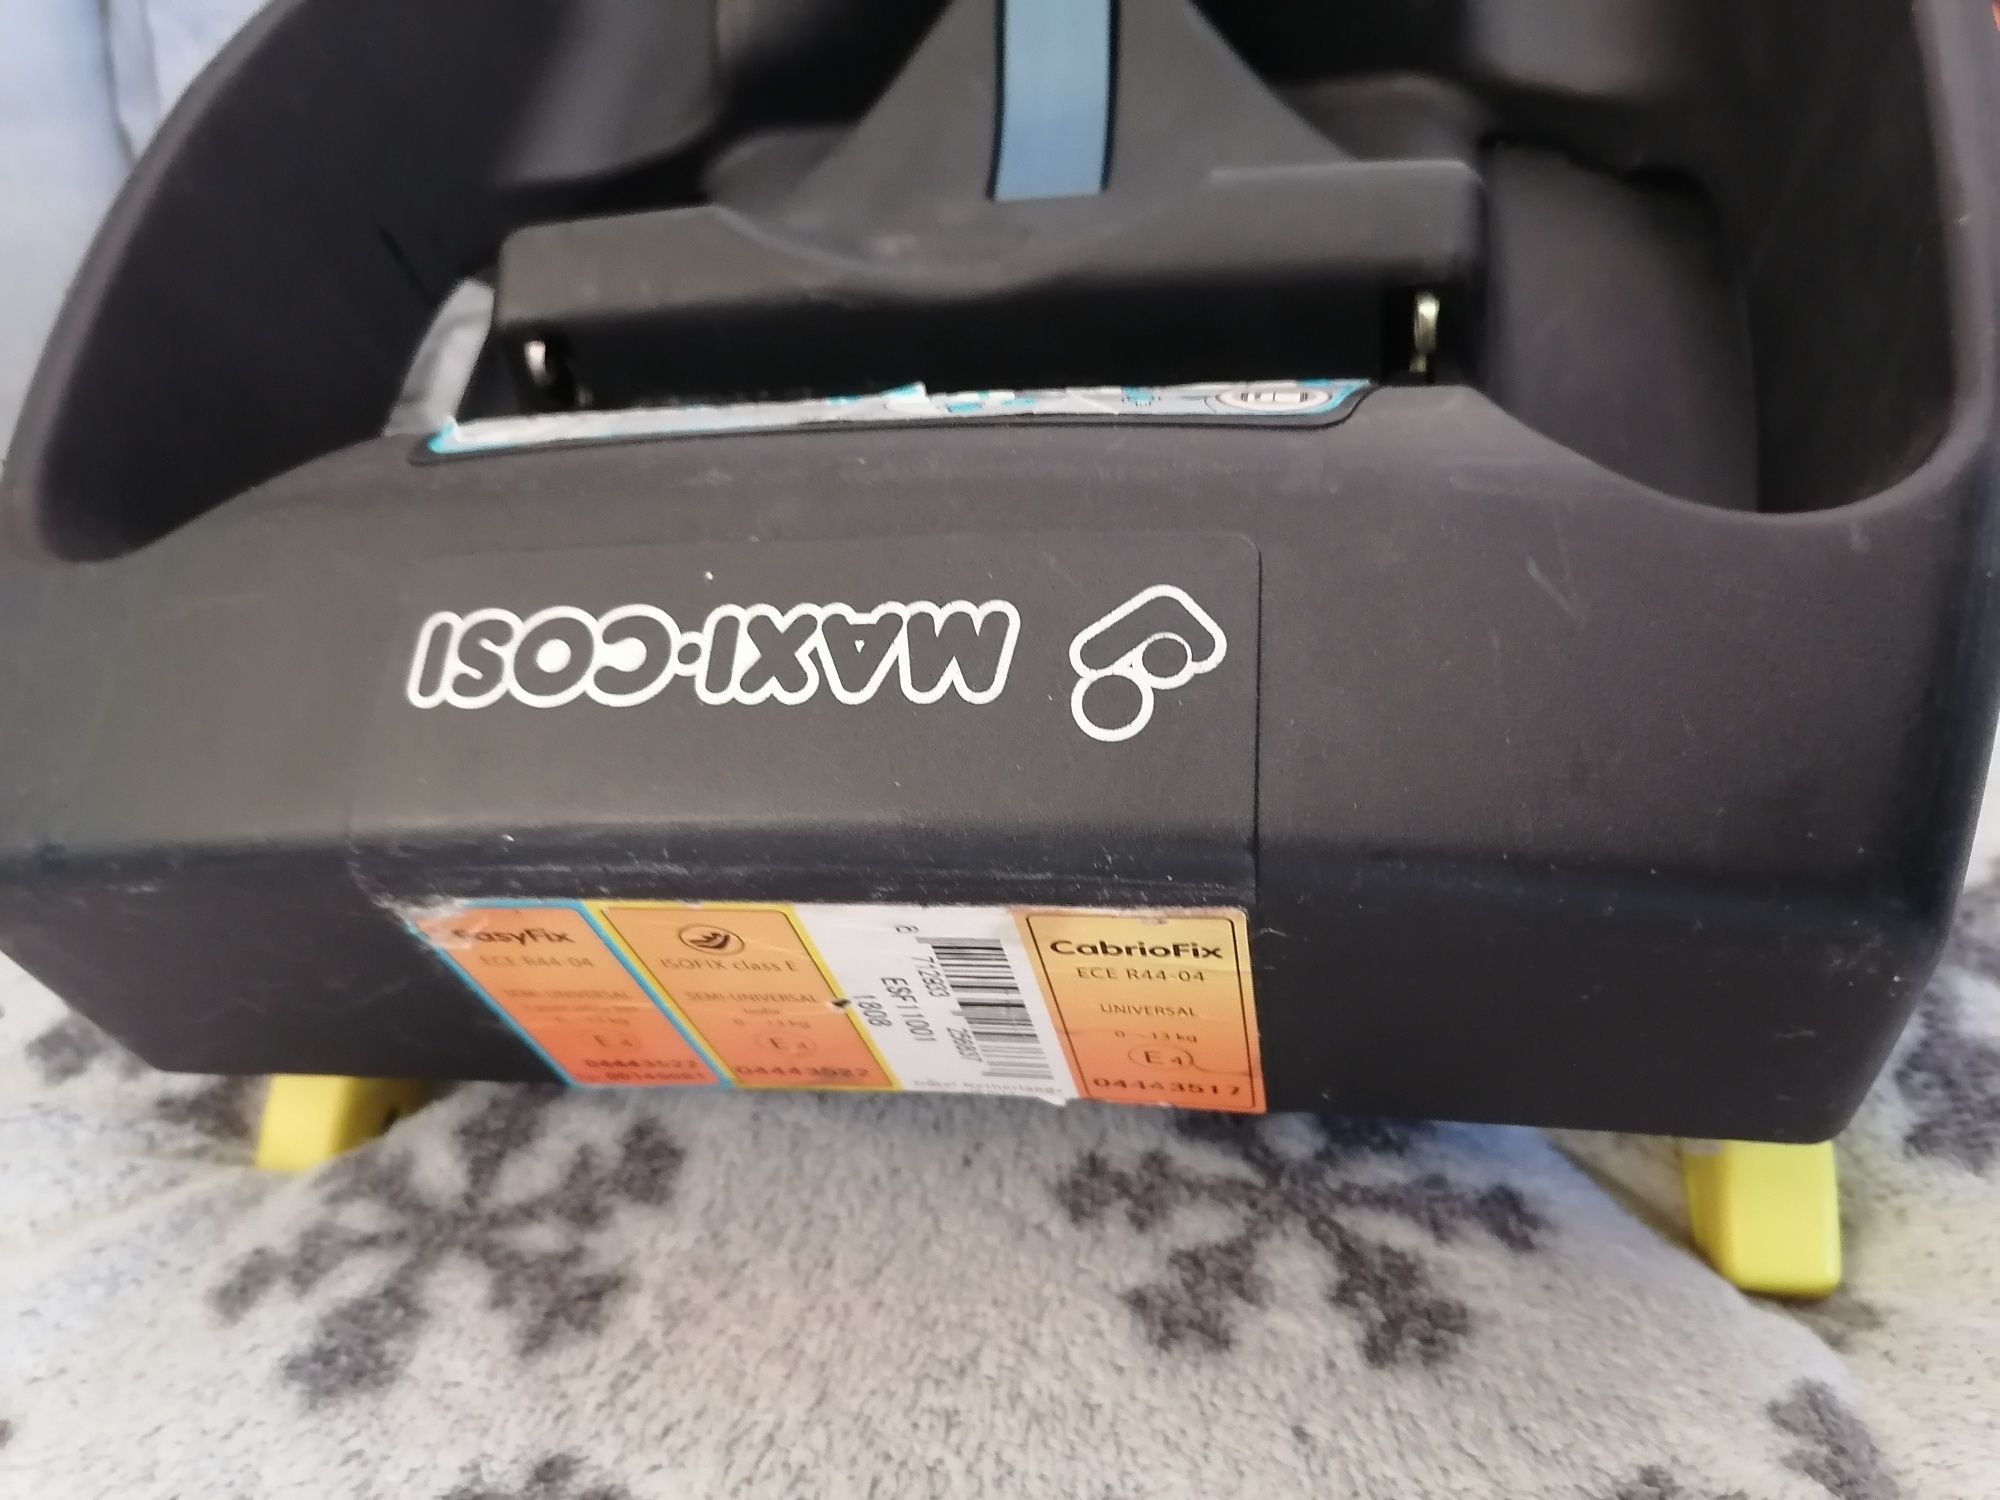 Maxi-cosy база за столче за кола
Изофикс база в много добро състояние